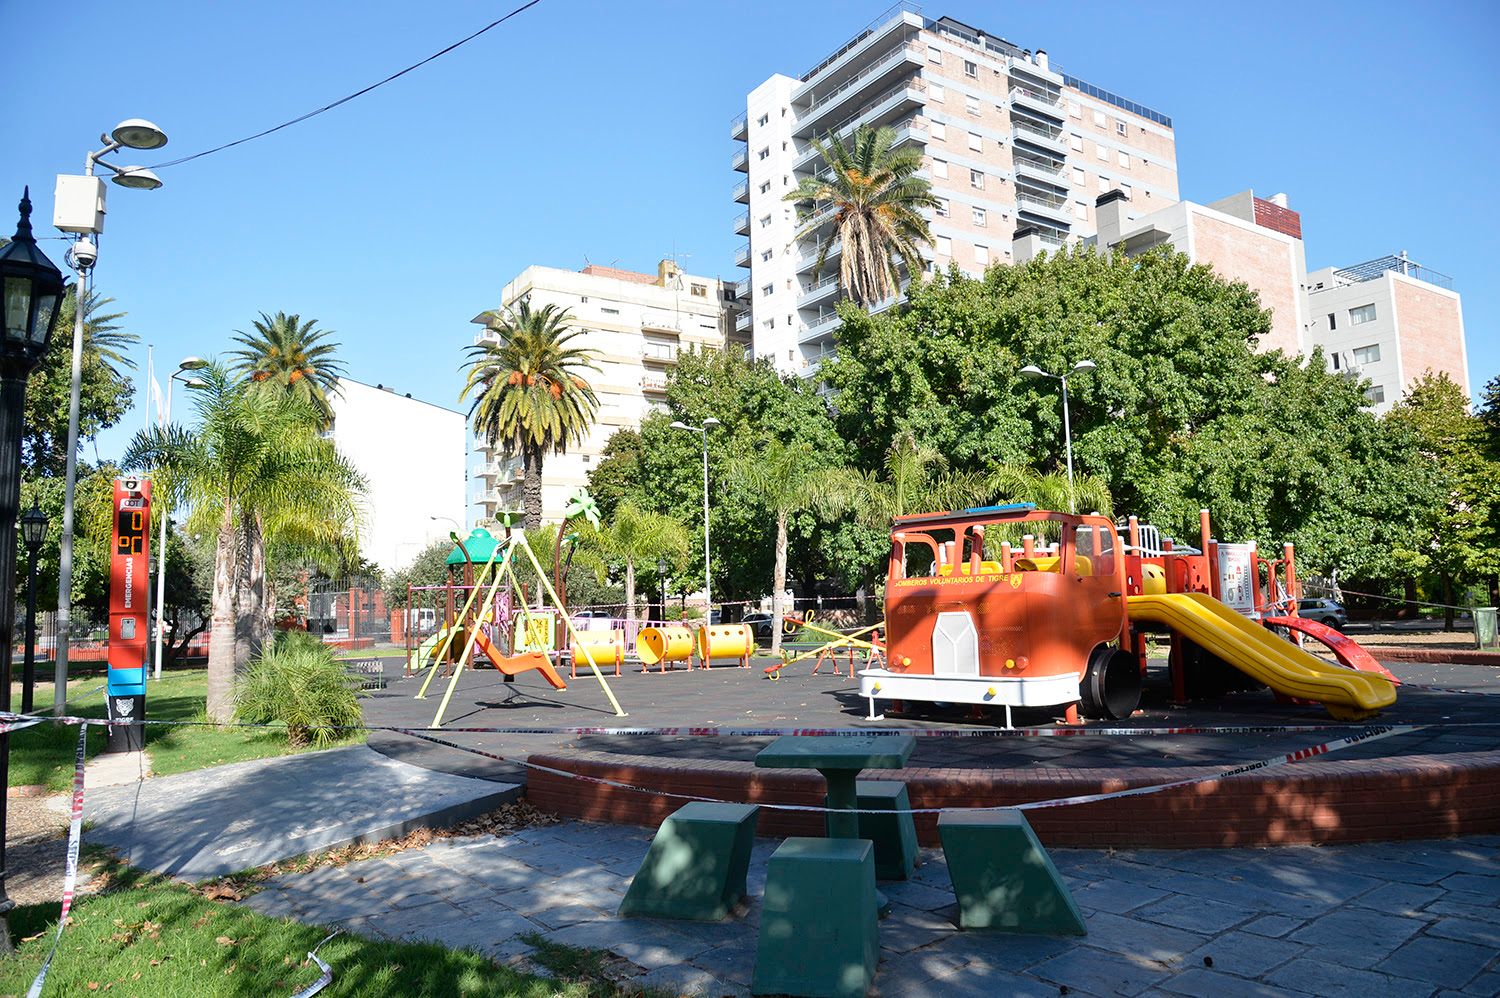 Segunda ola Covid: Municipio de Tigre cierra plazas, polideportivos, el Puerto de Frutos y centros comerciales a cielo abierto